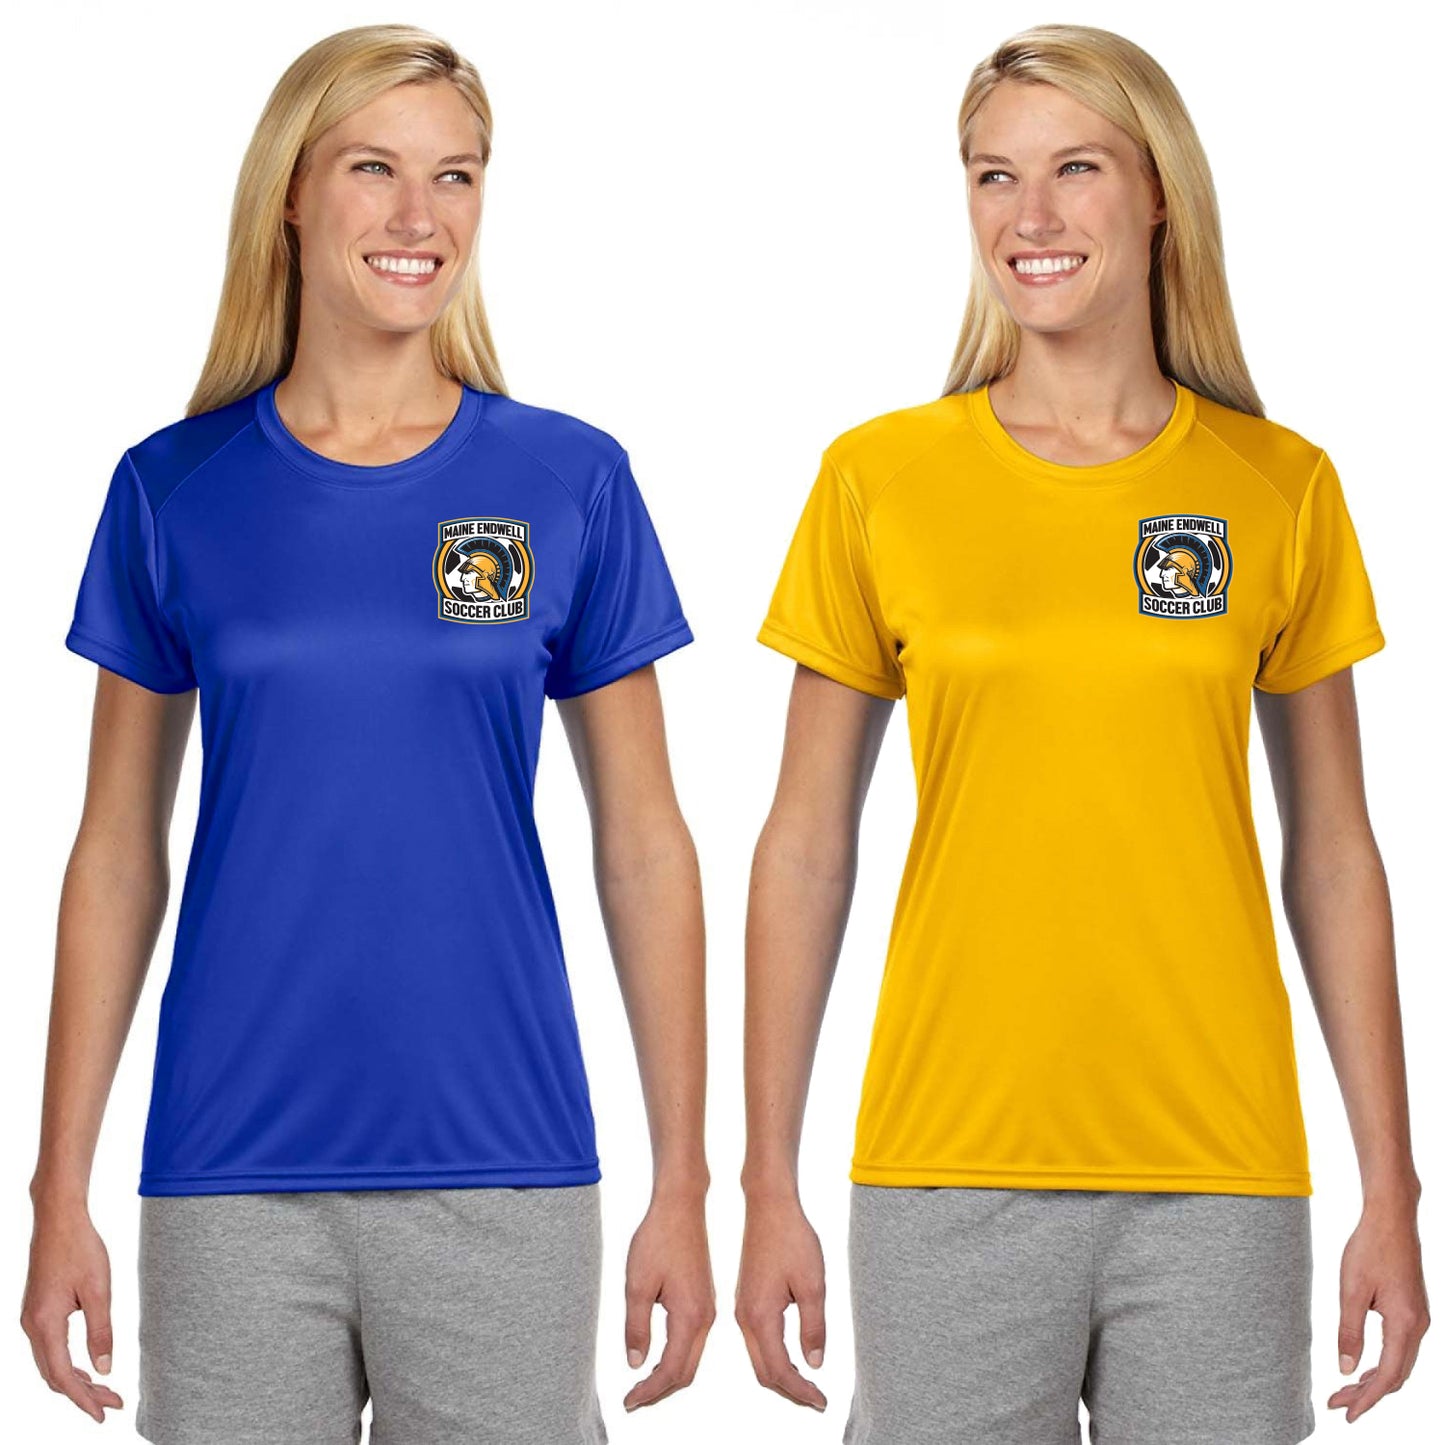 Maine Endwell Soccer Club Ladies' Performance T-Shirt